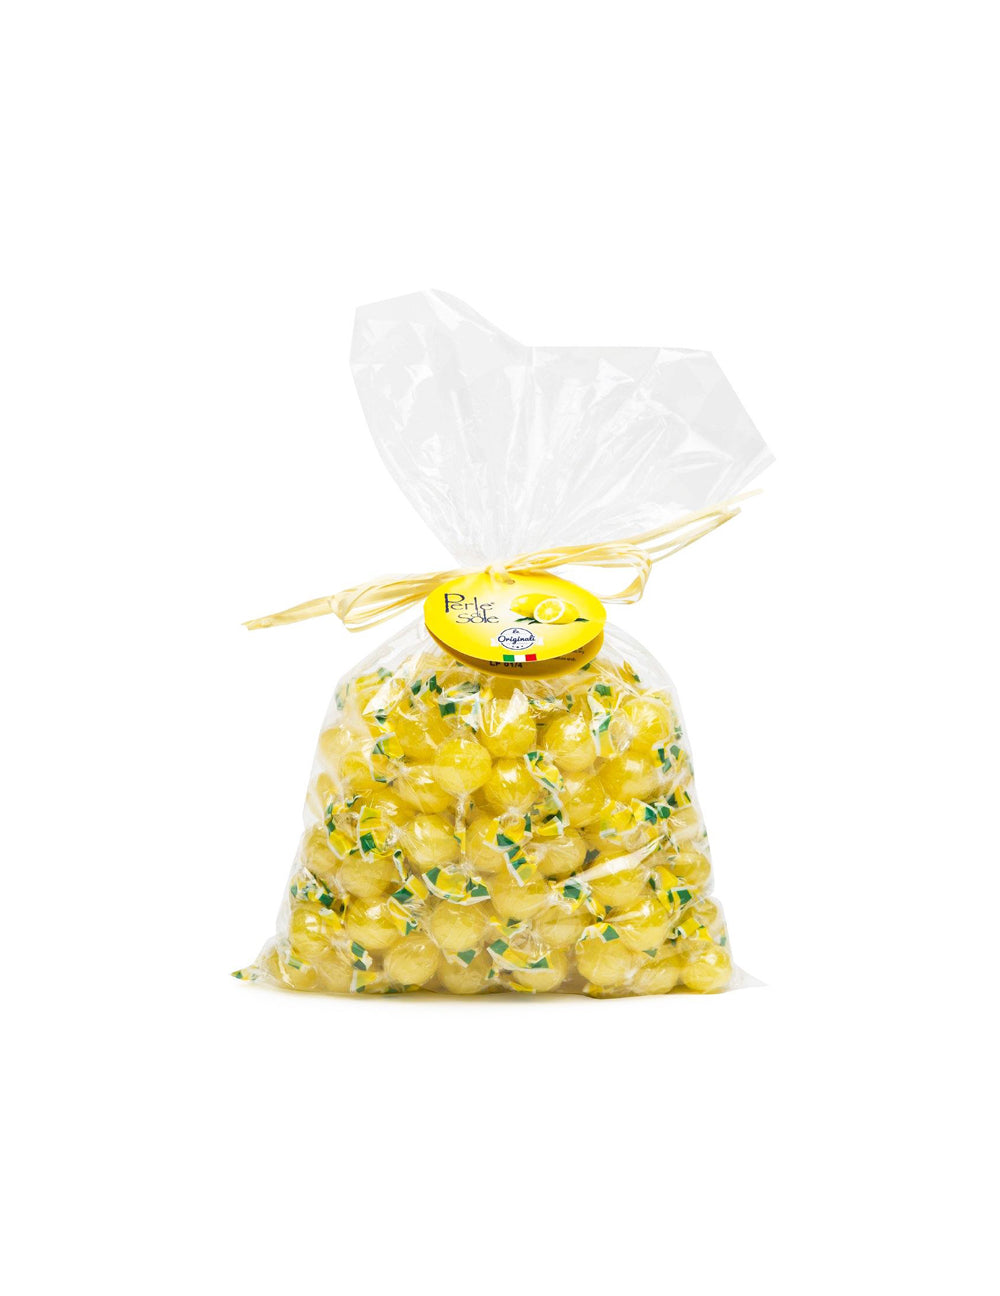  Perle di Sole Italian Lemon Drops Hard Candy